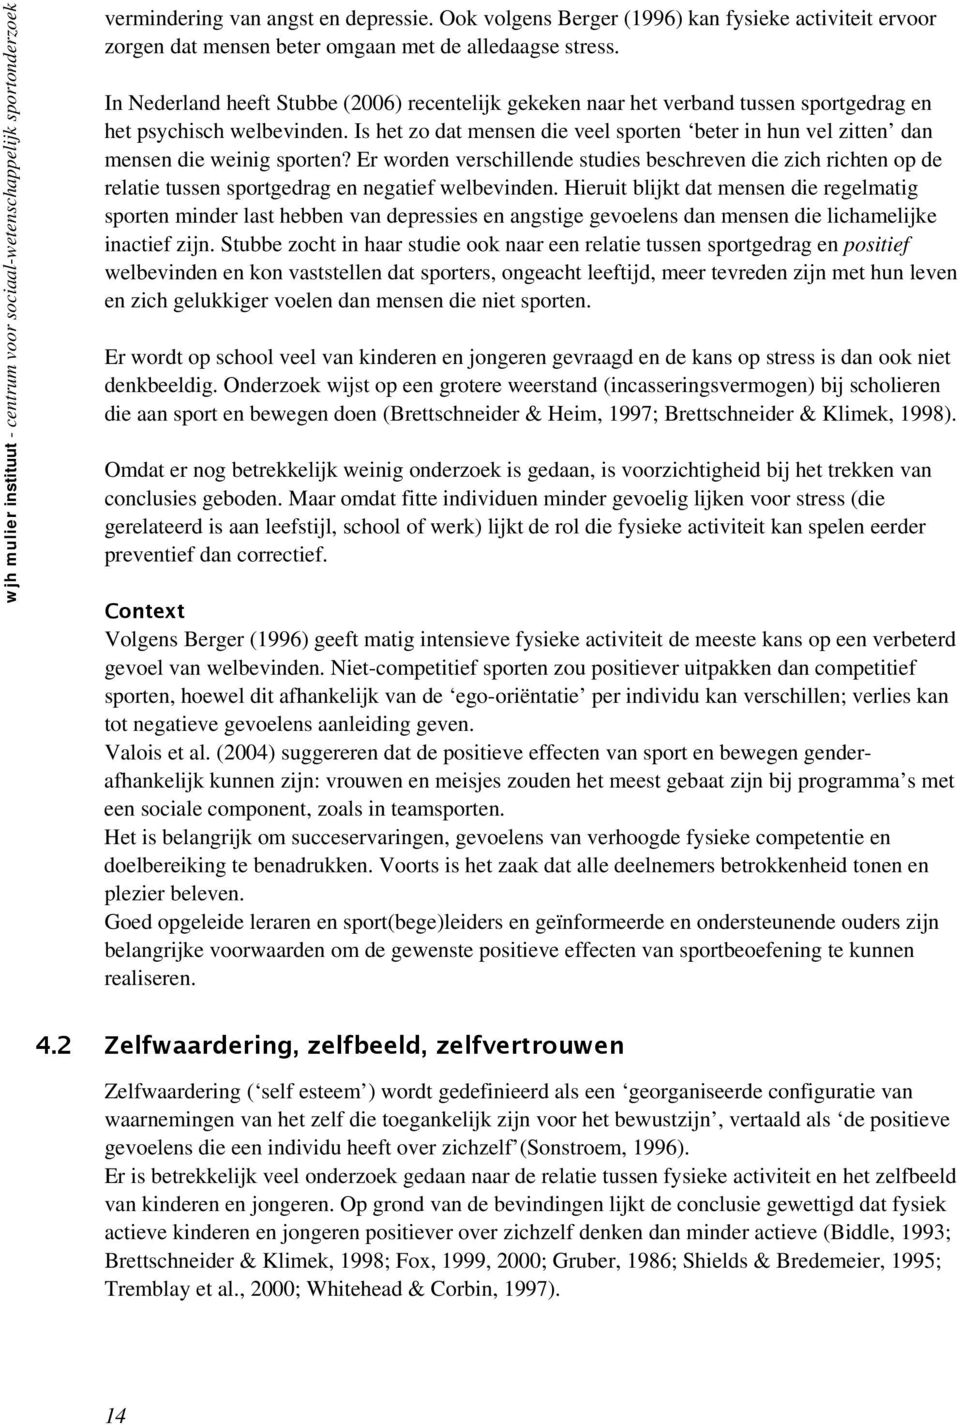 In Nederland heeft Stubbe (2006) recentelijk gekeken naar het verband tussen sportgedrag en het psychisch welbevinden.